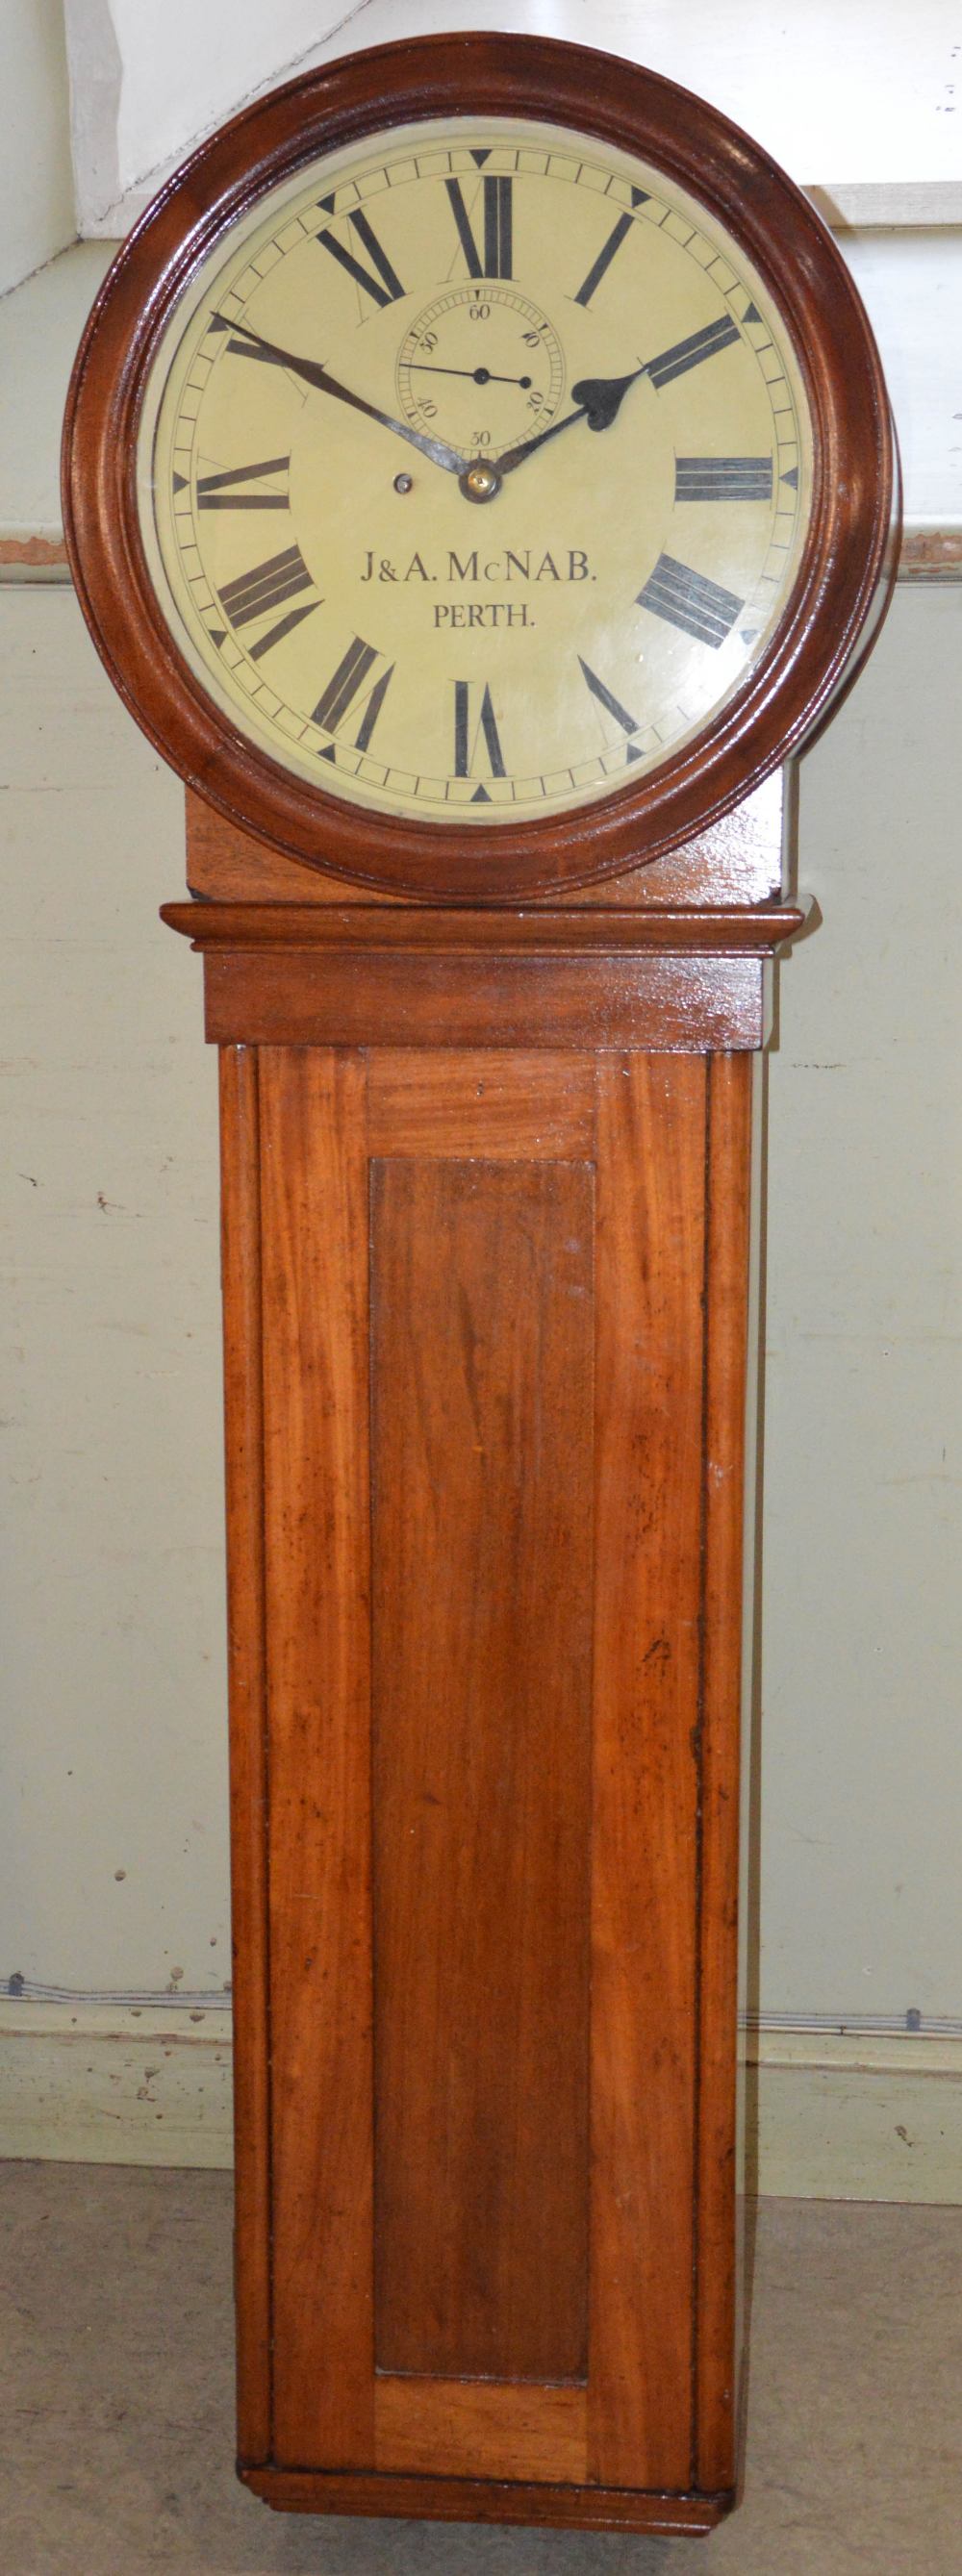 A 19th century mahogany railway station regulator wall clock, J & A MCNAB, PERTH, the 15" circular